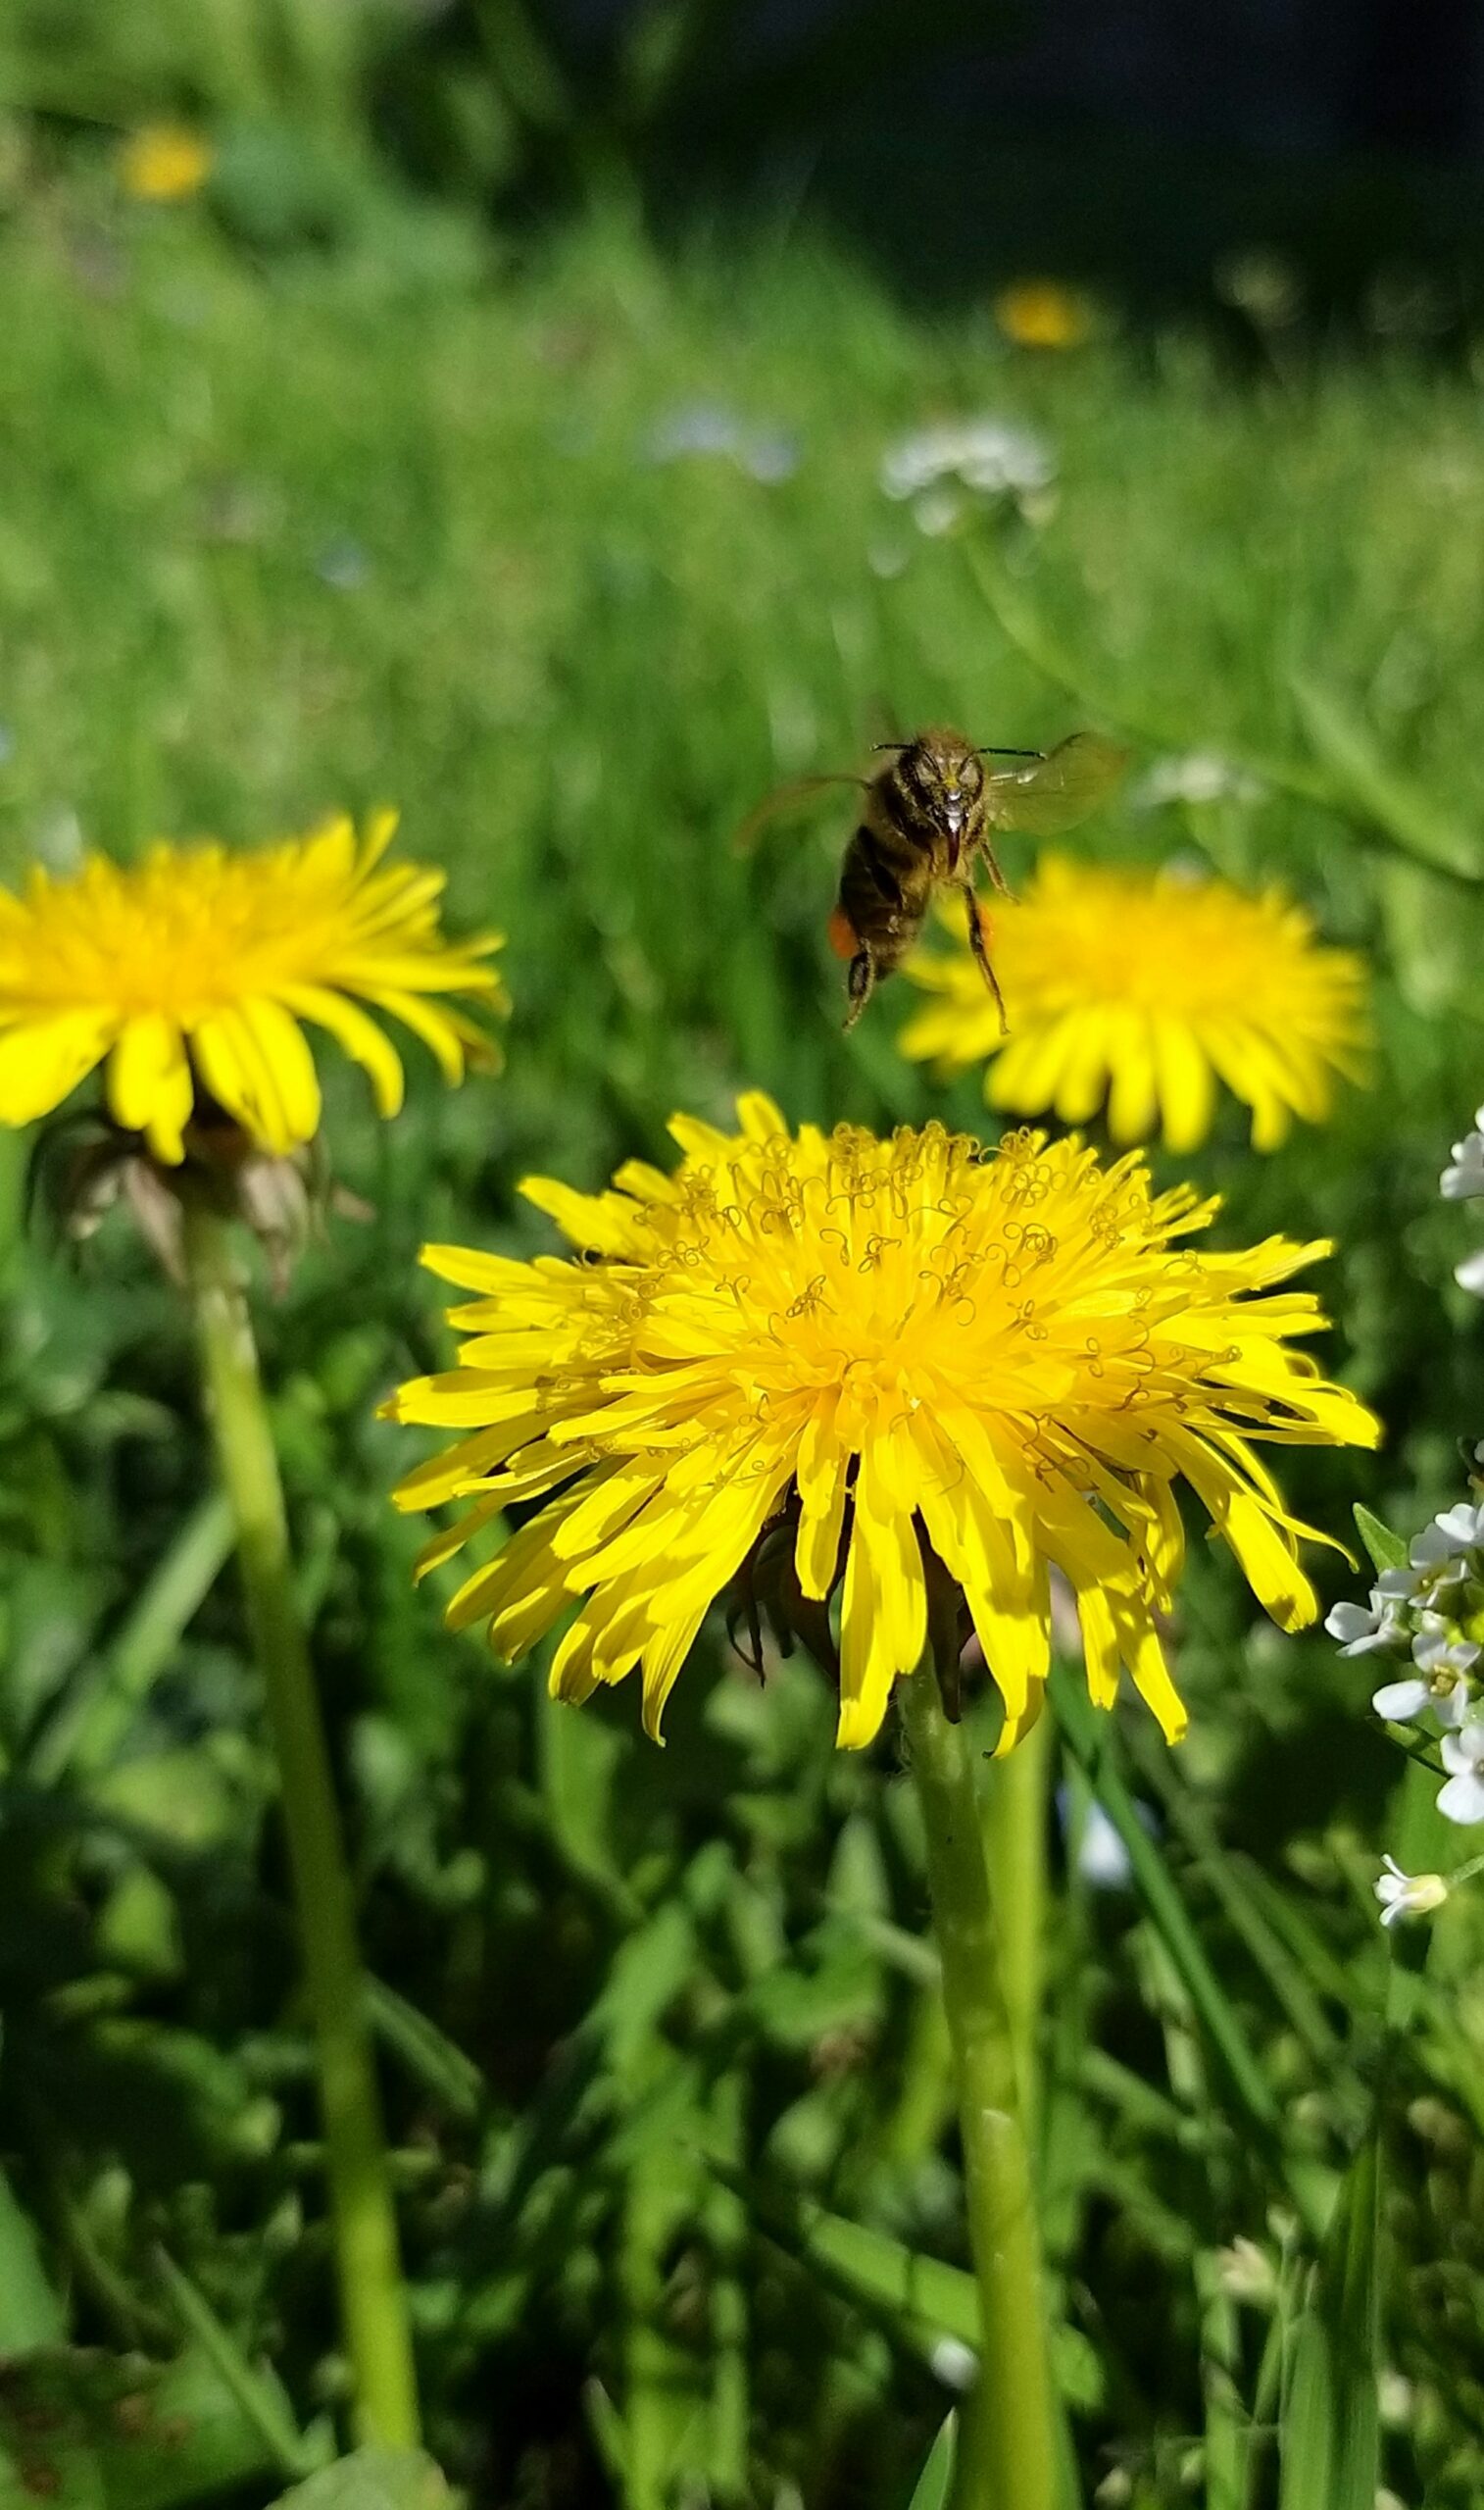 a bee on a dandelion flower in a field